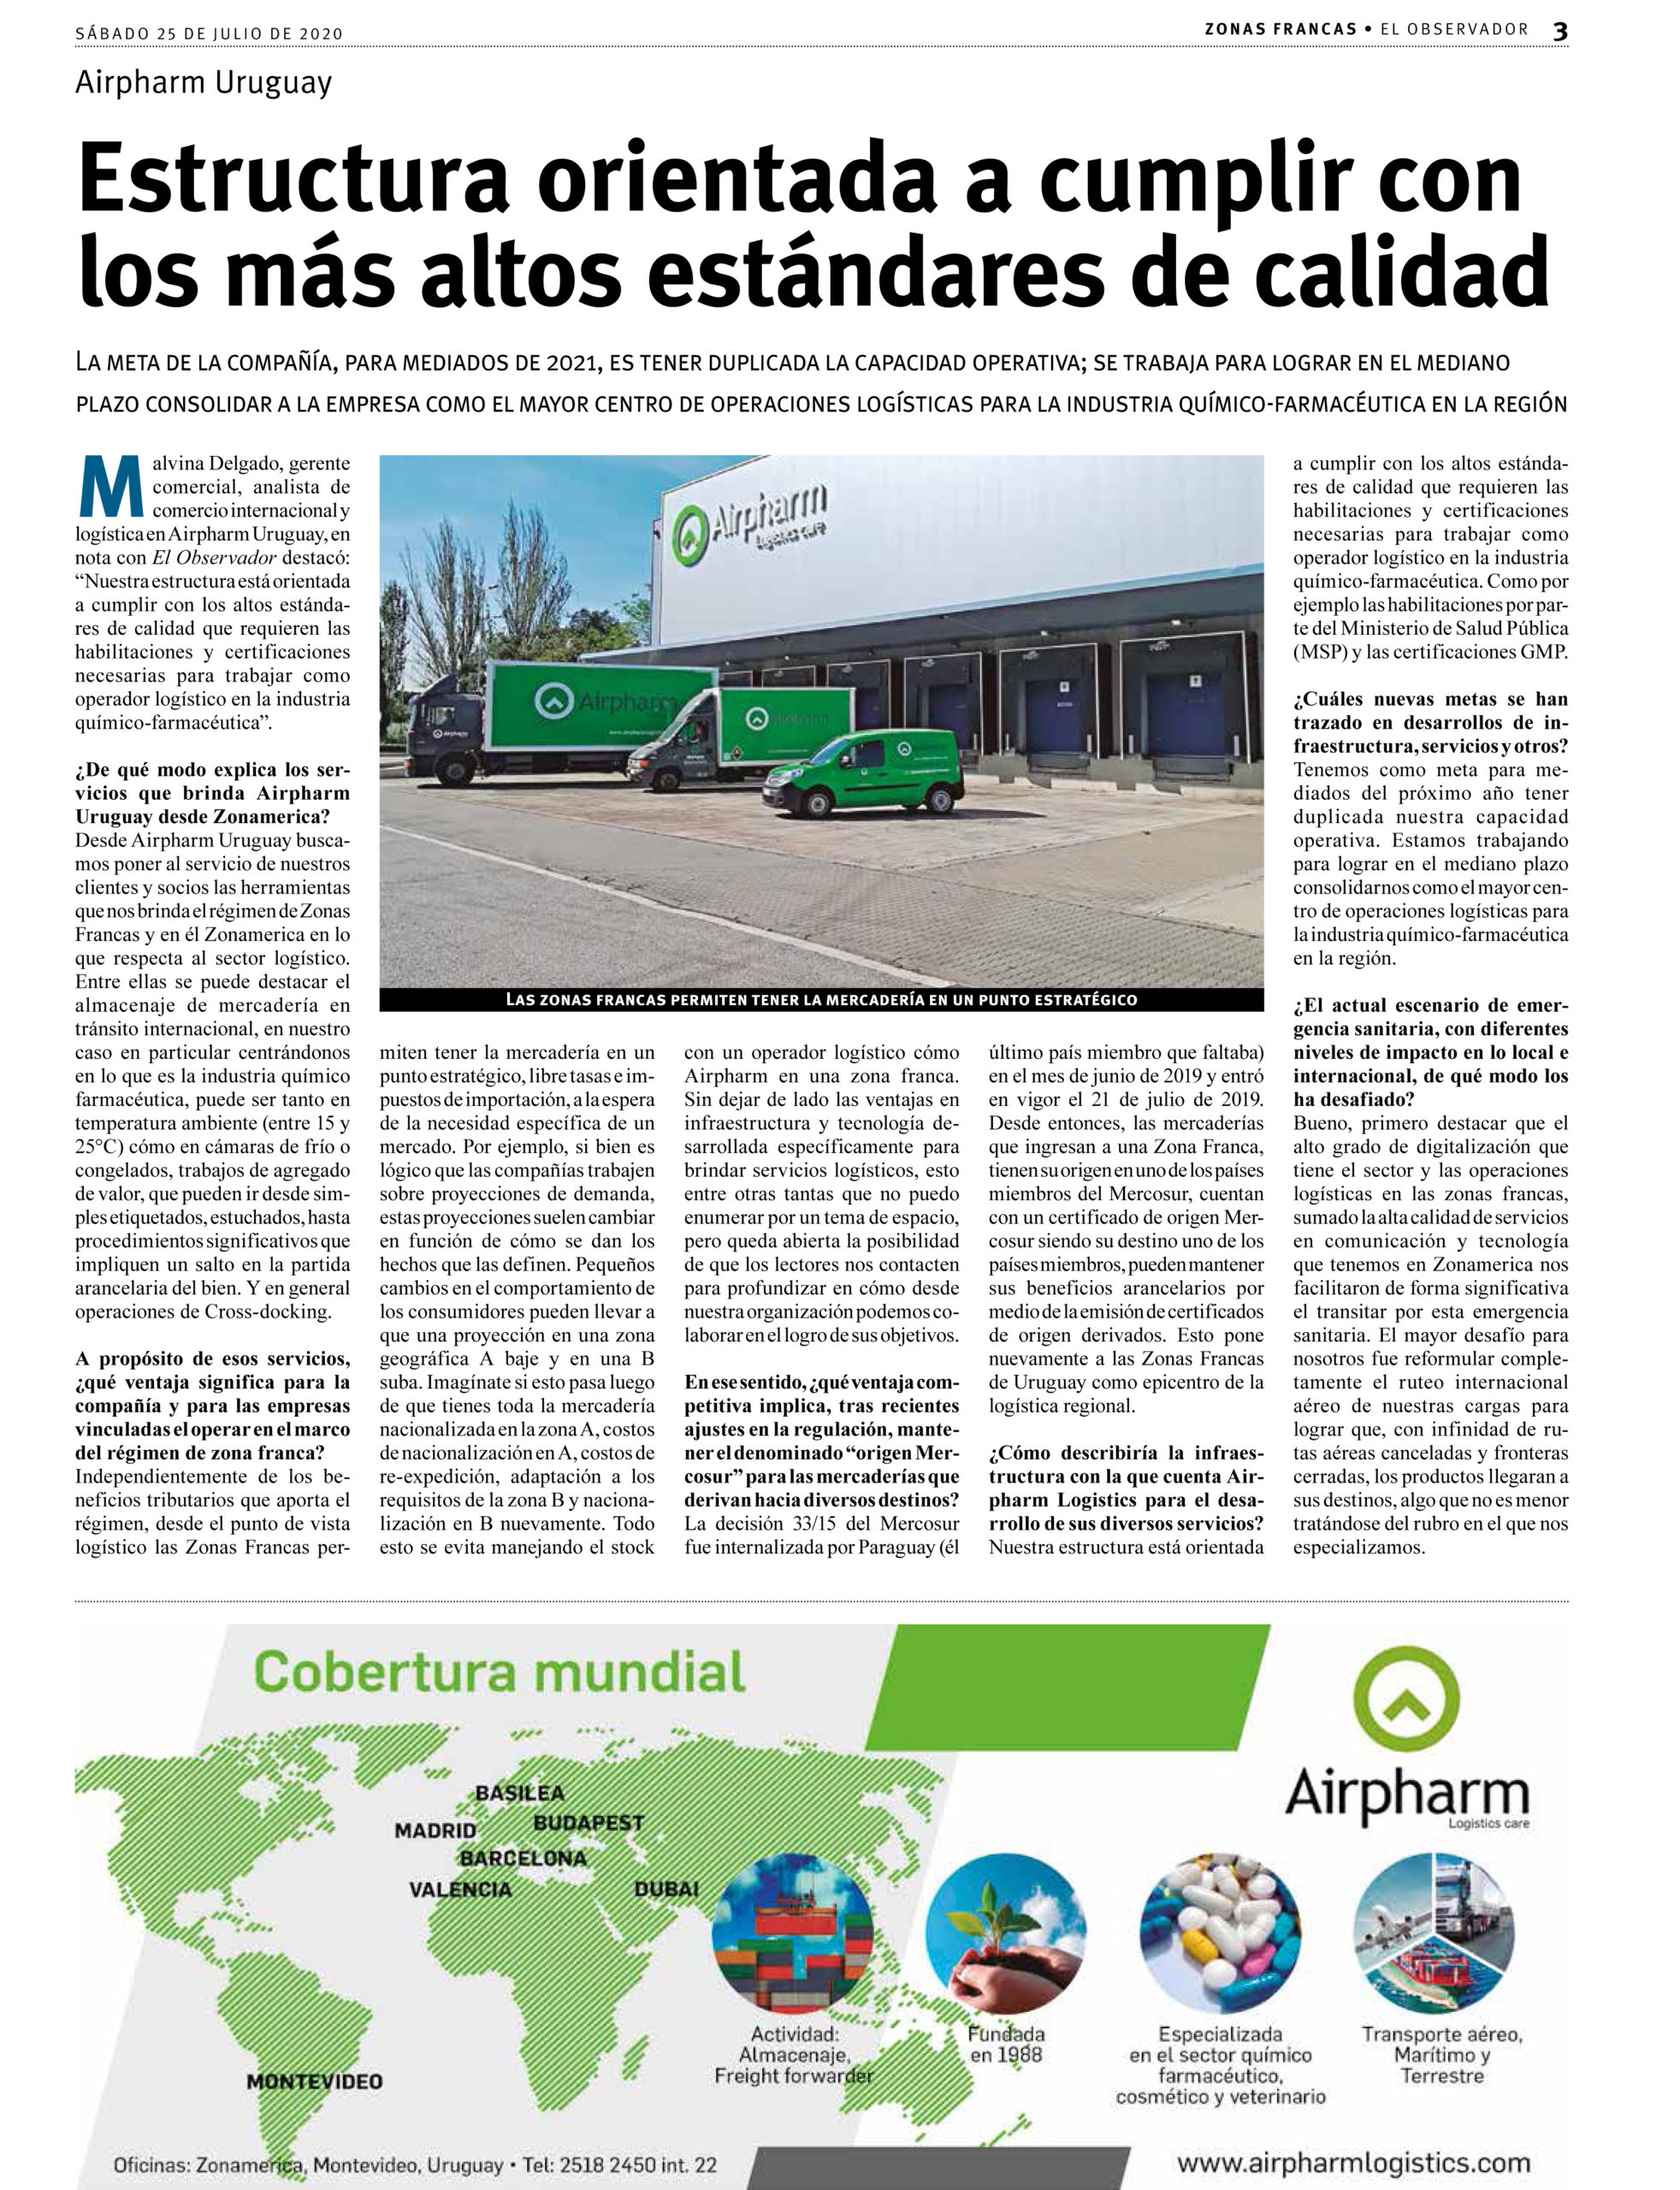 artículo sobre Airpharm Uruguay que puede encontrarse en el suplemento "Zonas Francas" de "El Observador"